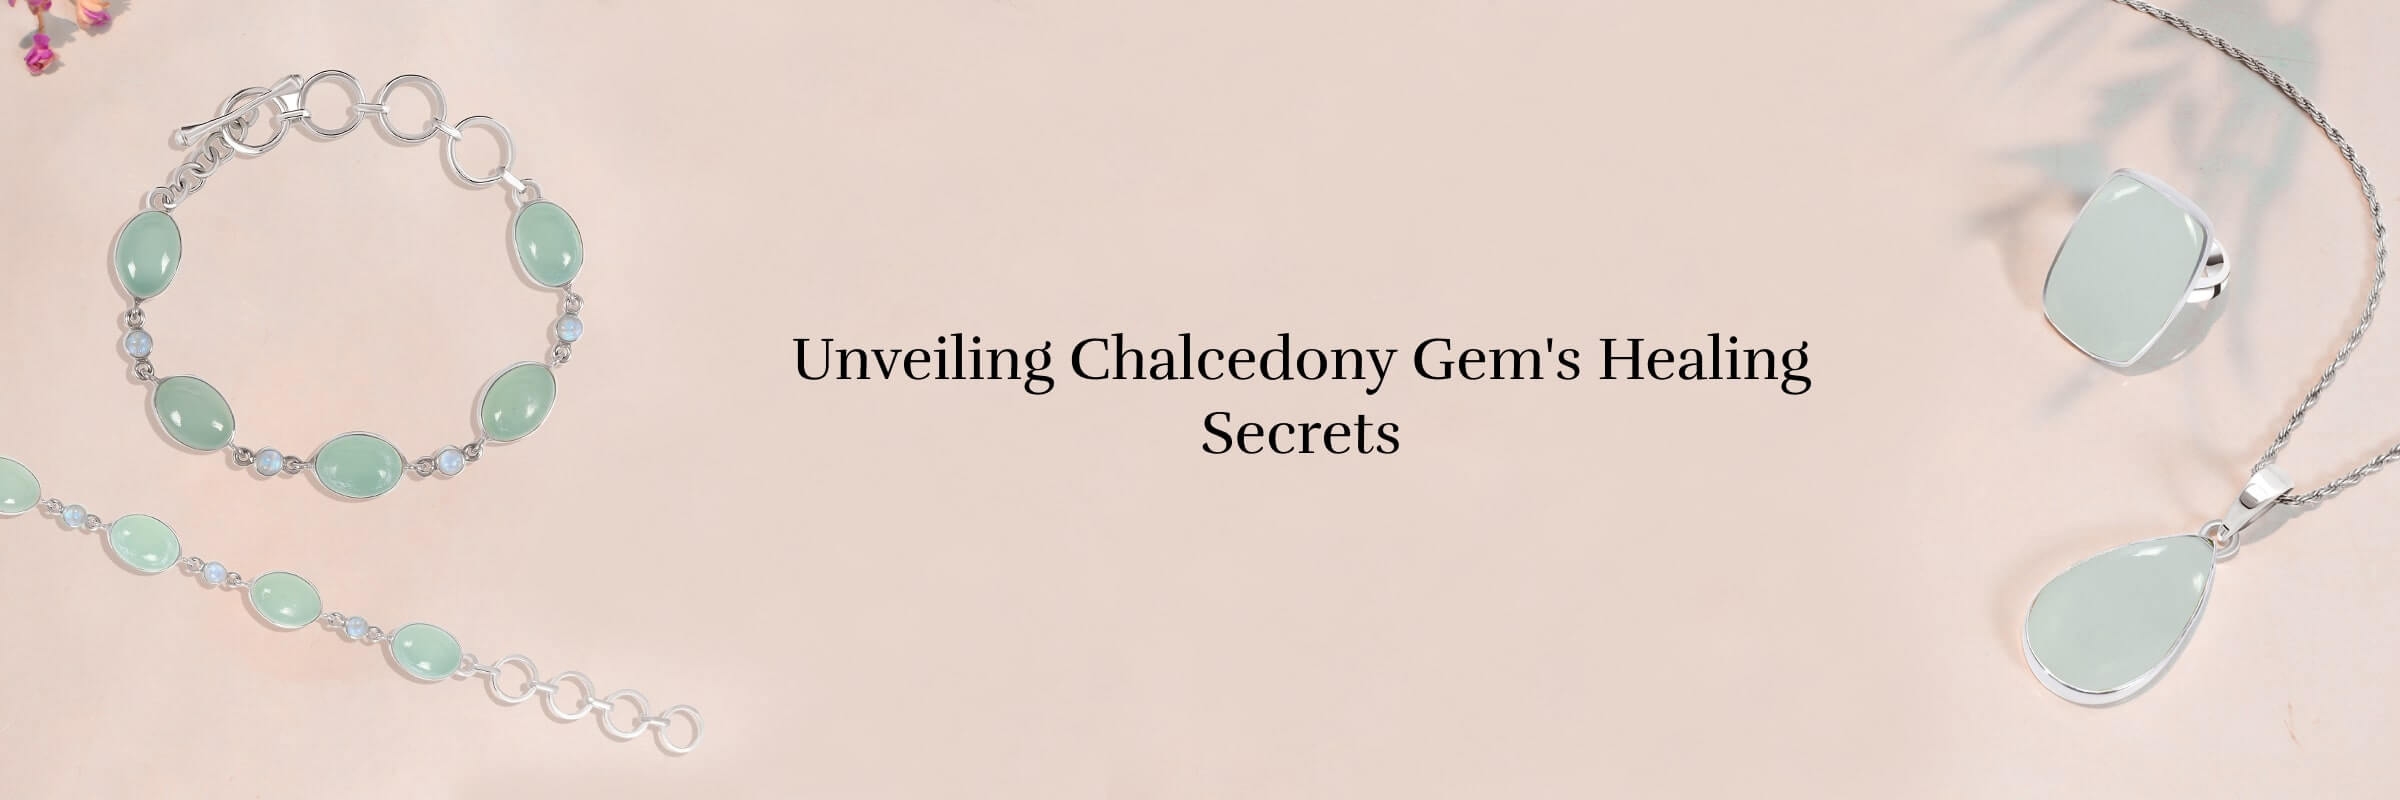 Healing Properties of Chalcedony Gem